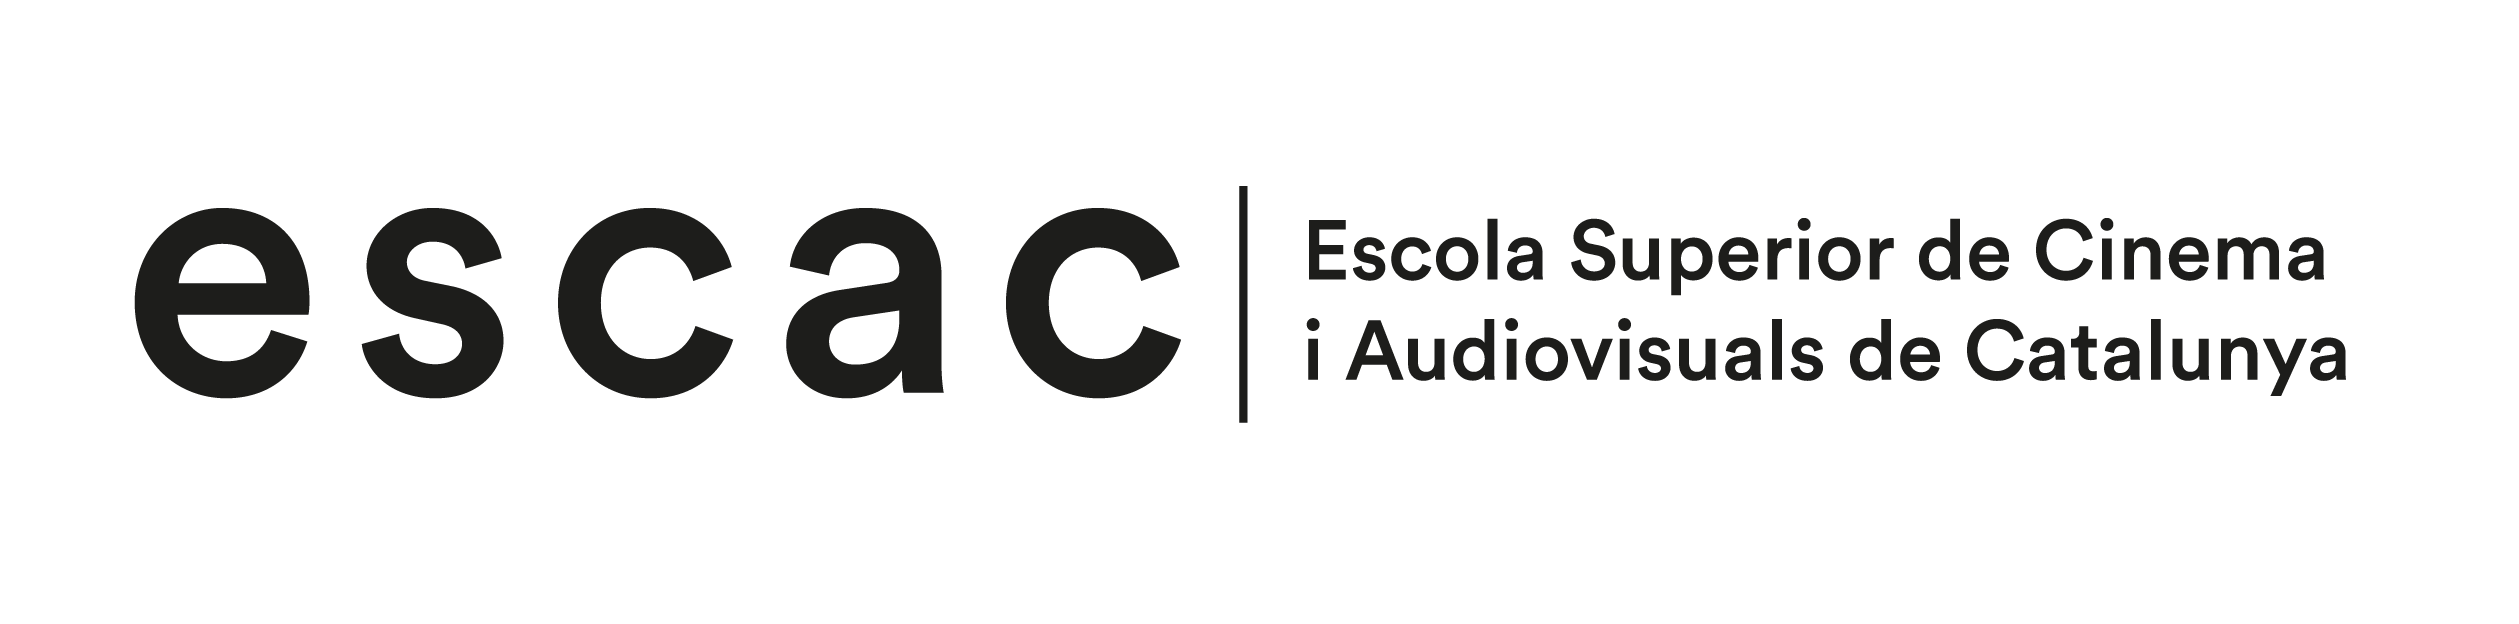 Logo ESCAC